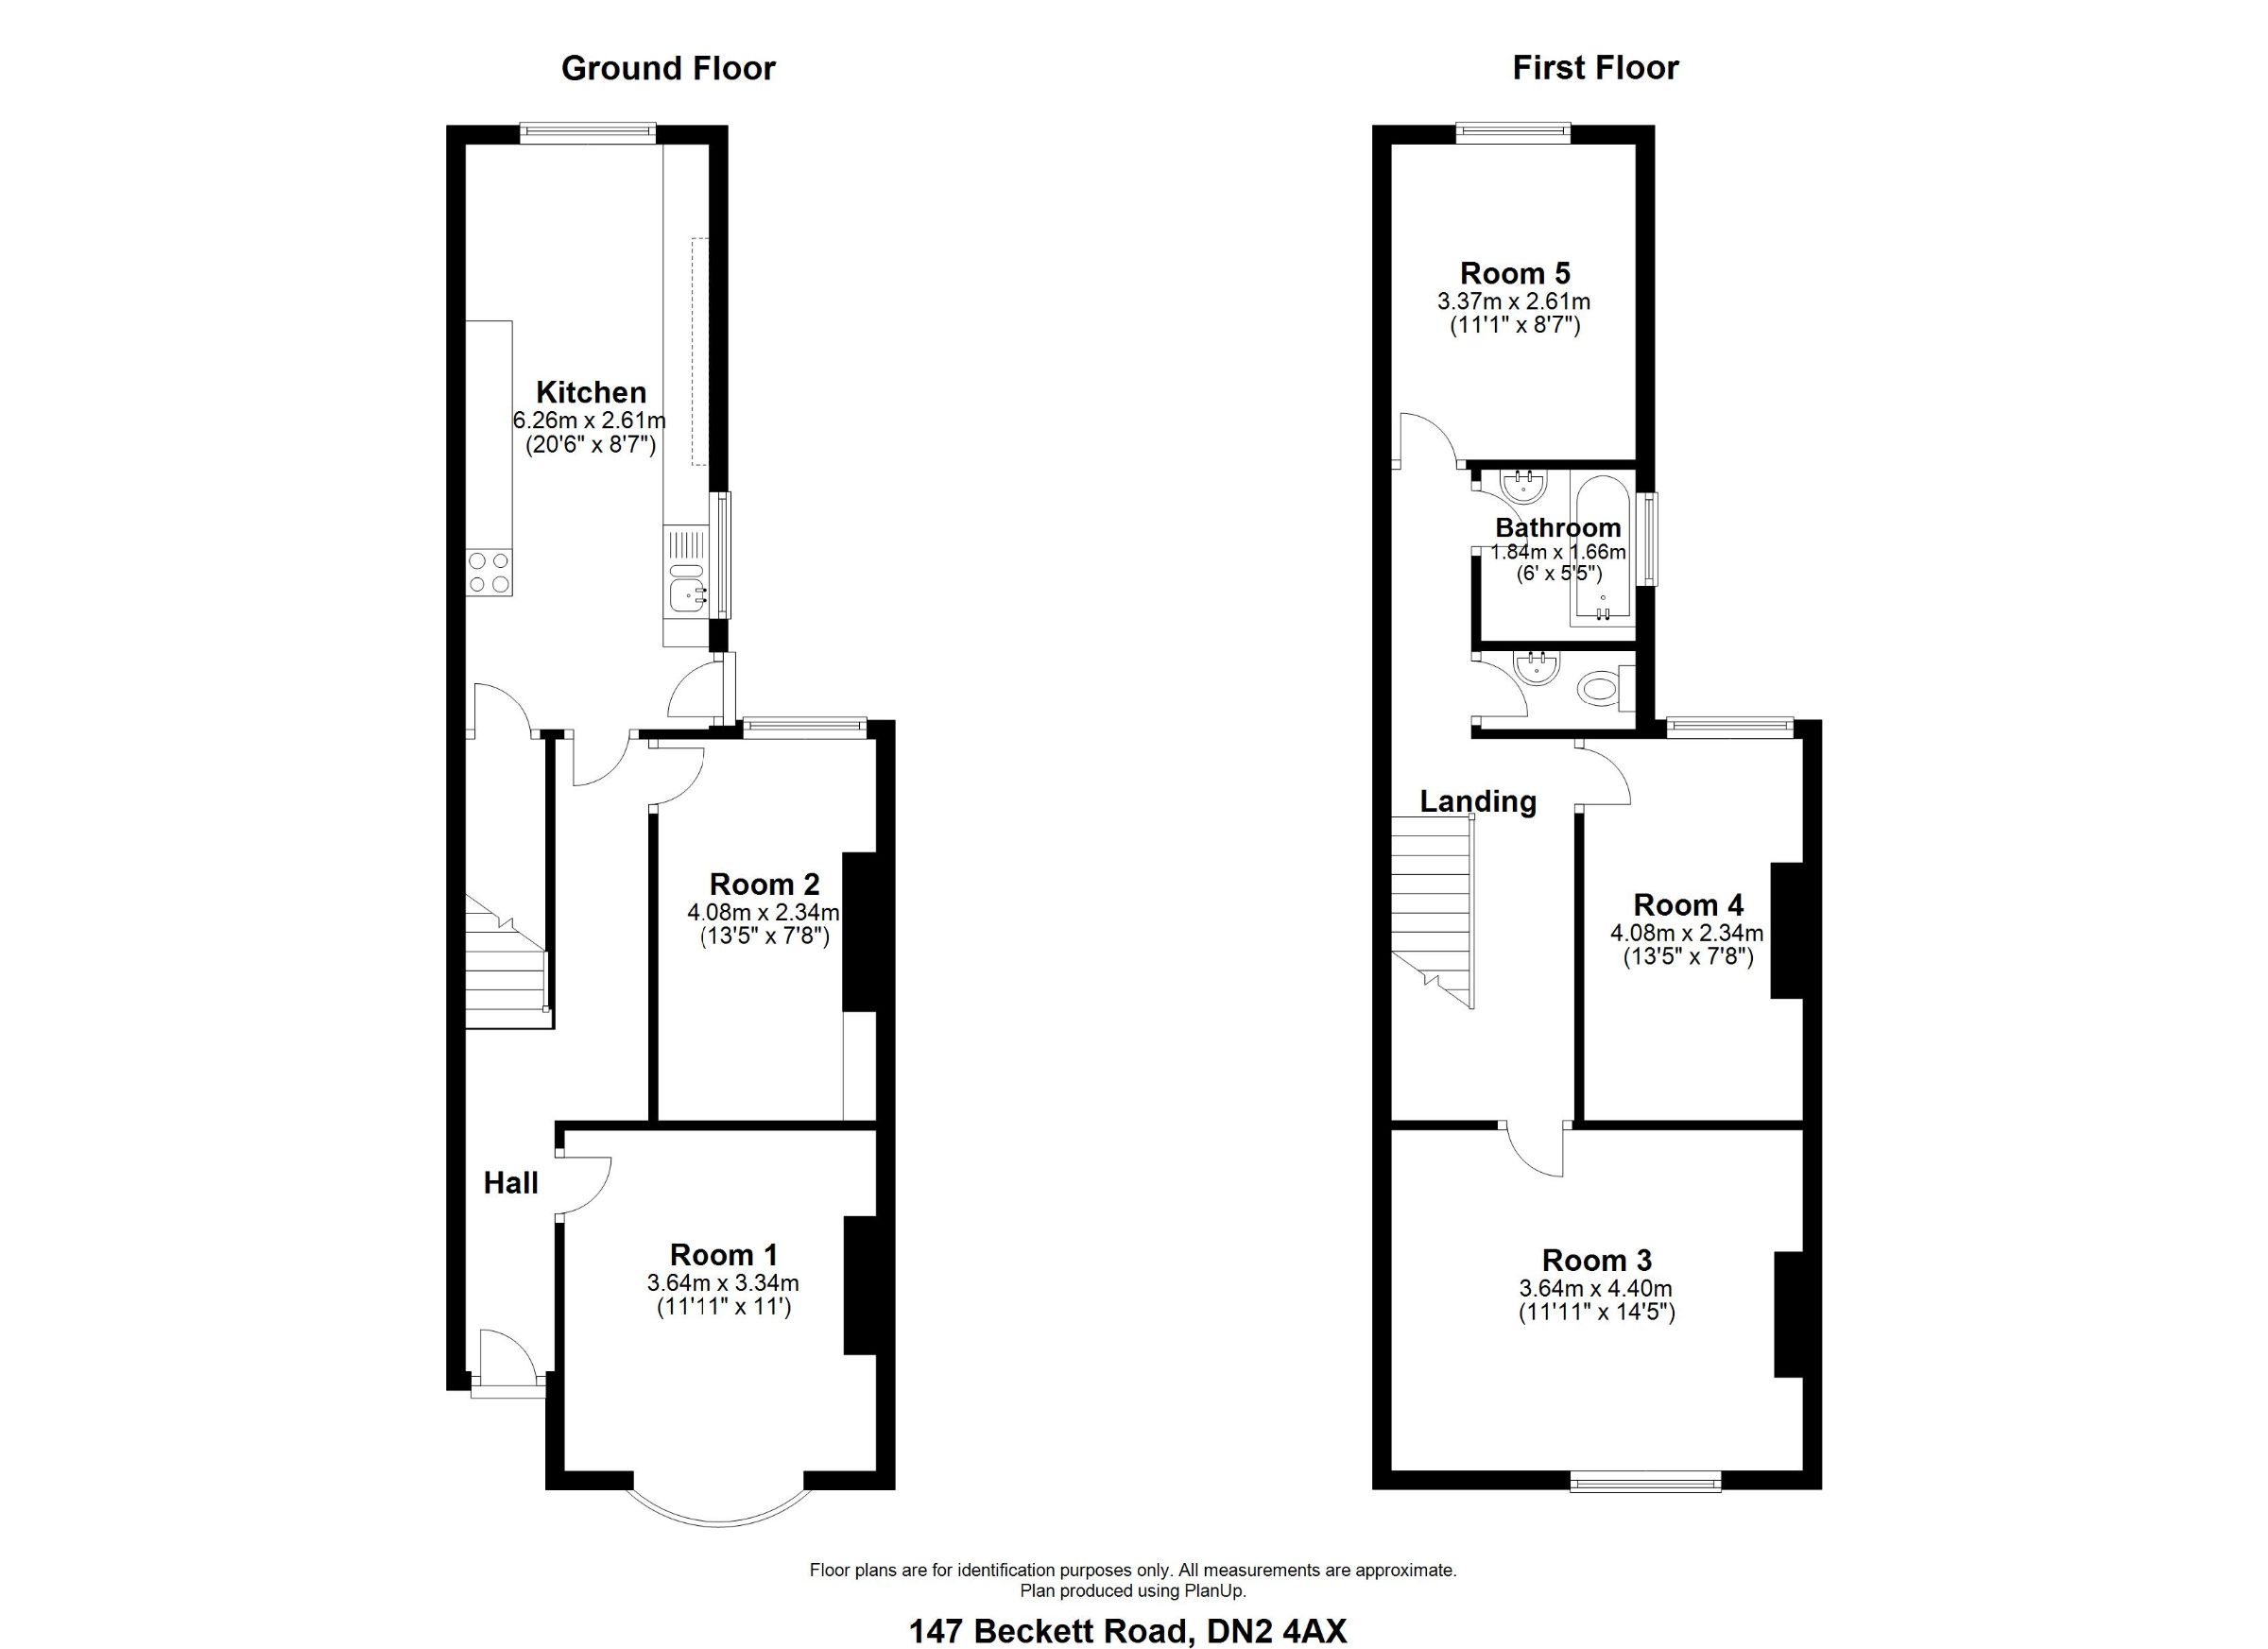 1 Bedrooms Studio to rent in Room 2, Beckett Road DN2